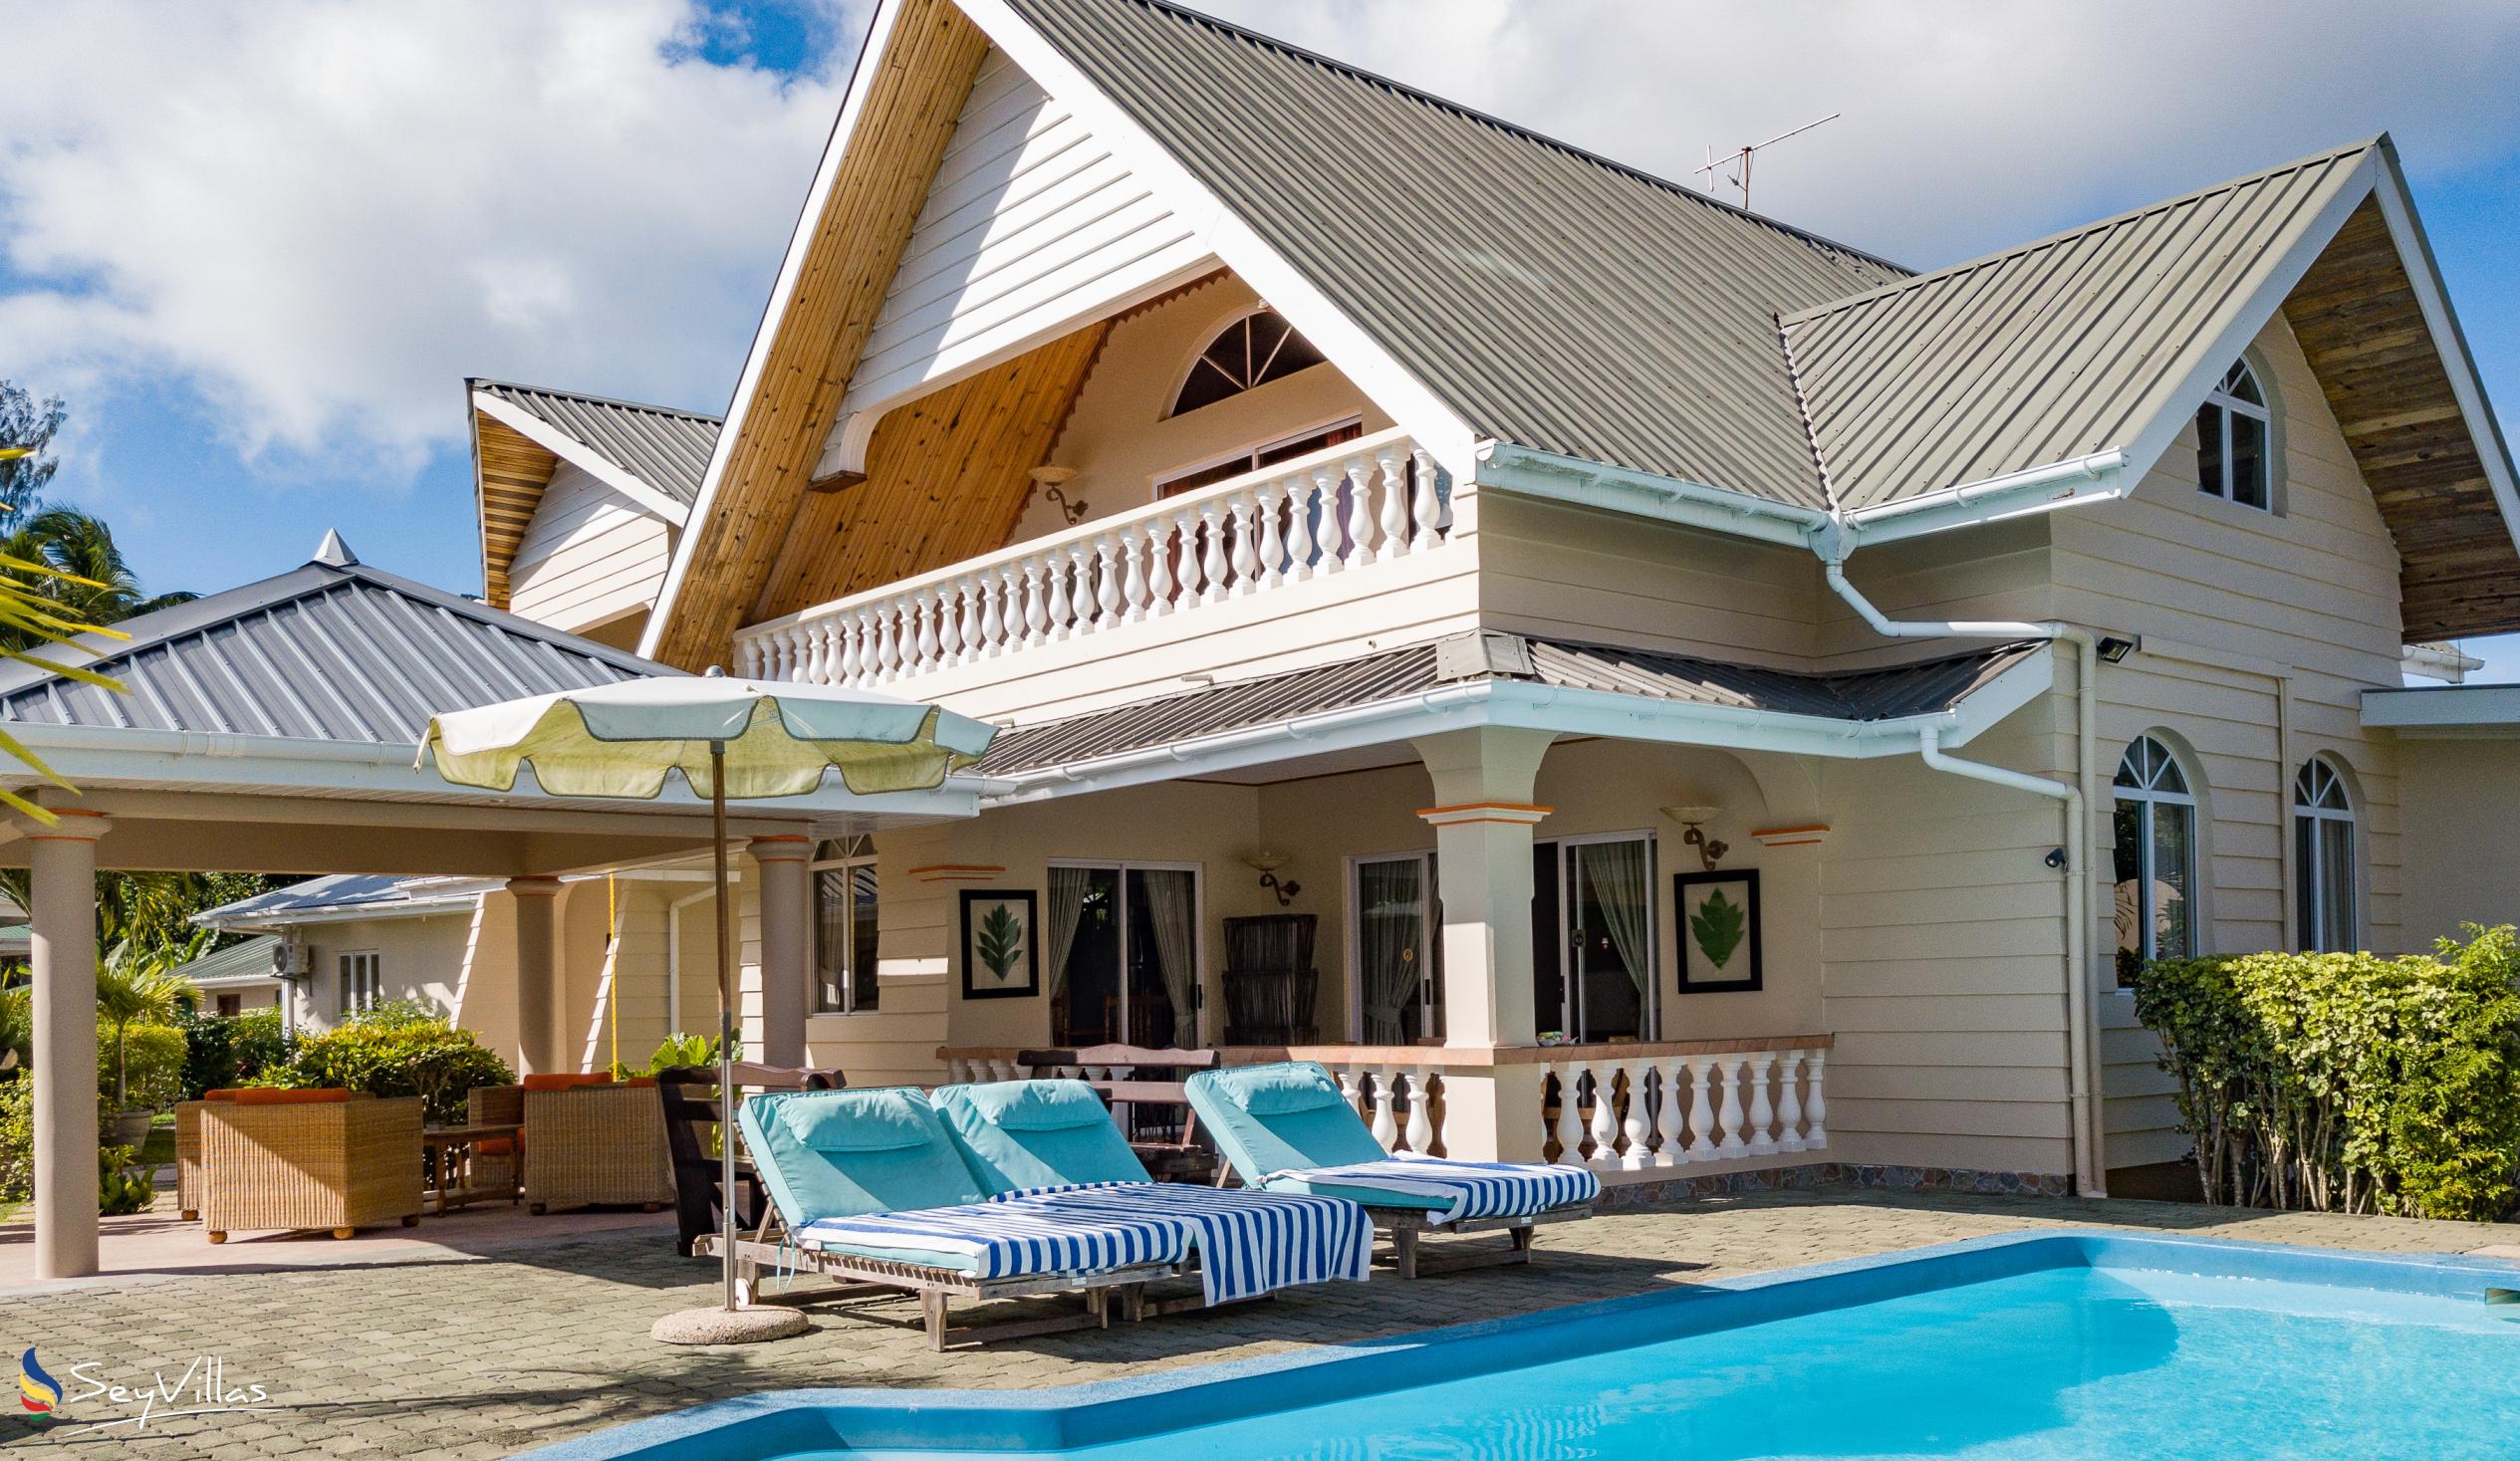 Foto 20: Villa Aya - Grand Villa - Praslin (Seychelles)